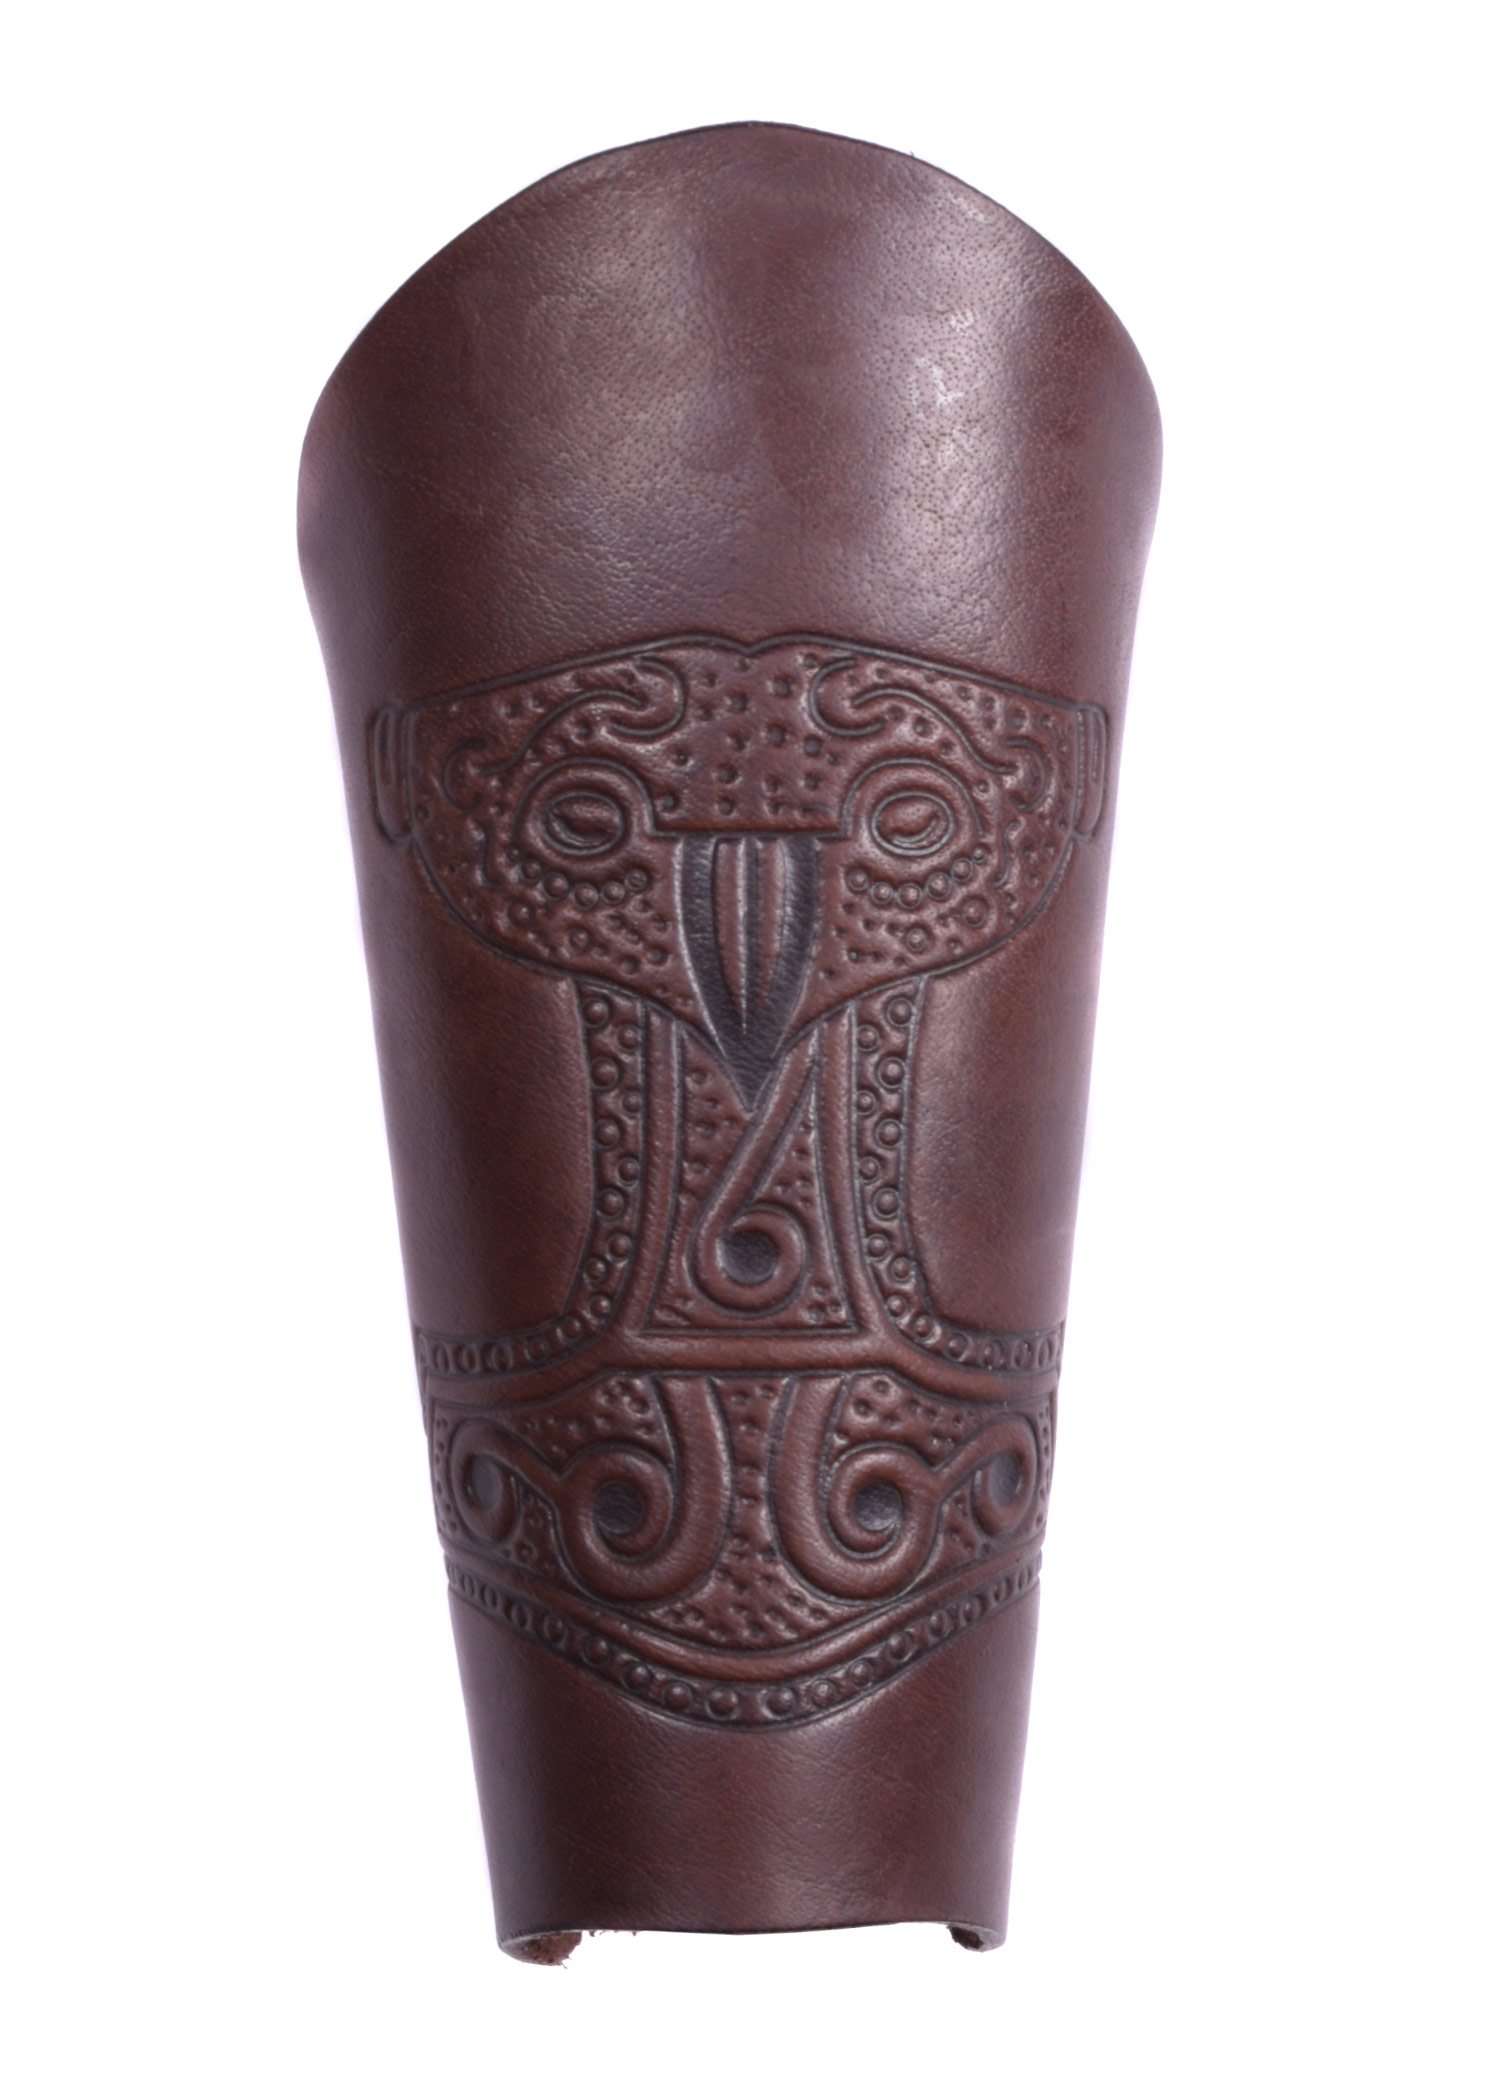 Armstulpe mit geprägtem Thorshammer, braun-antik, Menge Einzeln